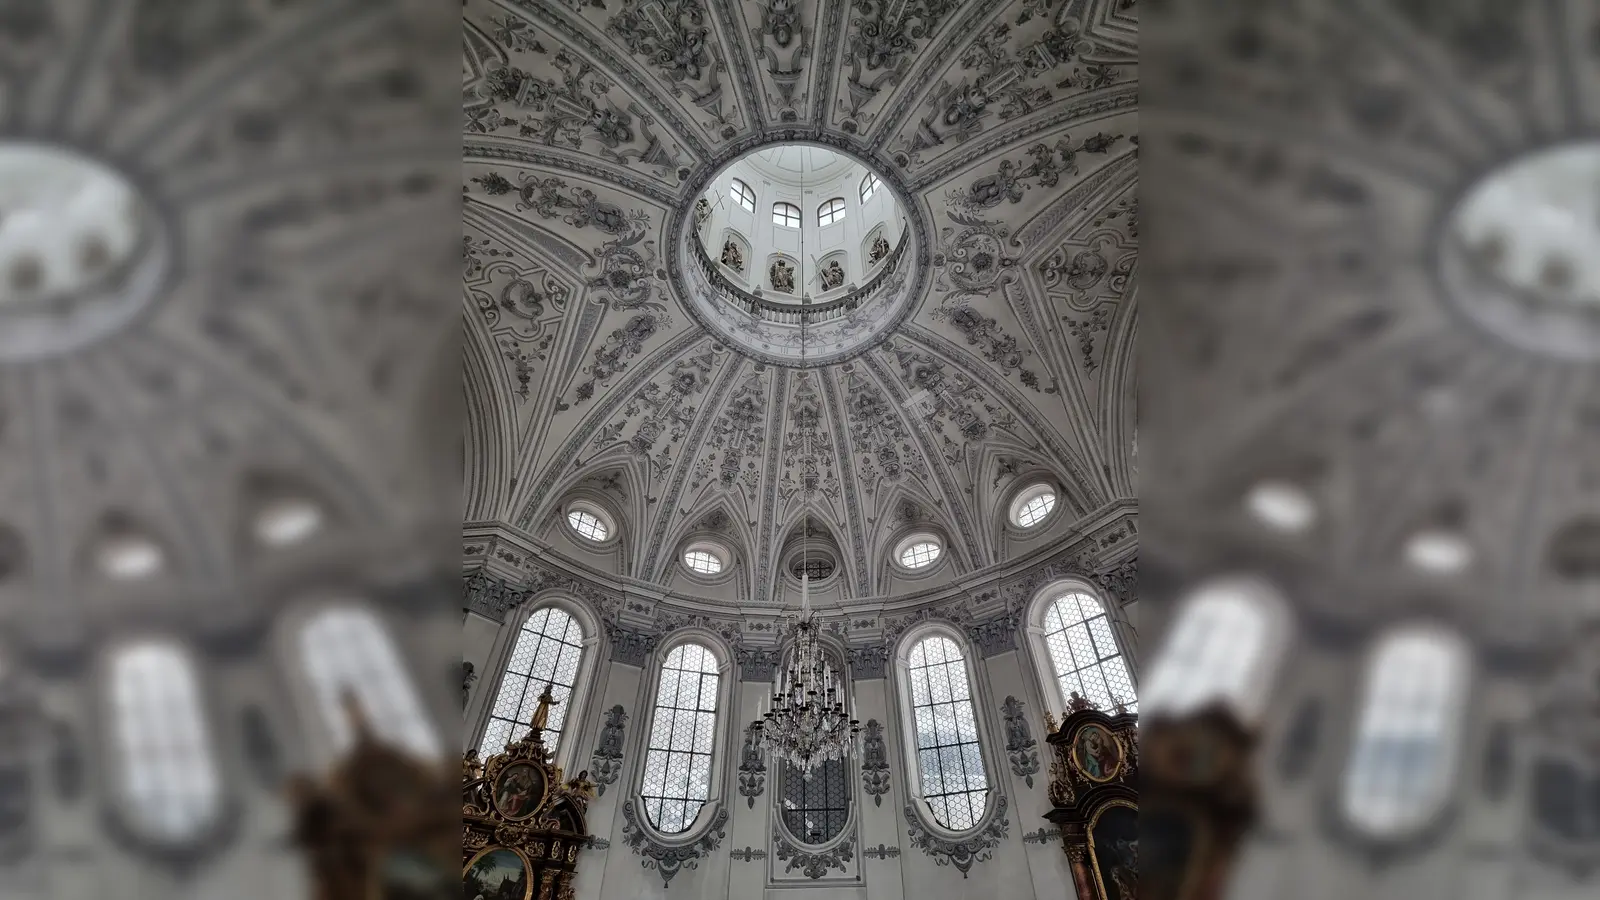 <b>An der Balustrade</b> in dieser kreisrunden Kuppel, dem sogenannten Apostelturm, stand Sabine Dauber mit der Kamera und bot den Zuschauern einen seltenen Blick in den Innenraum der Wallfahrtskirche Maria Birnbaum. (Foto: Alice Lauria)